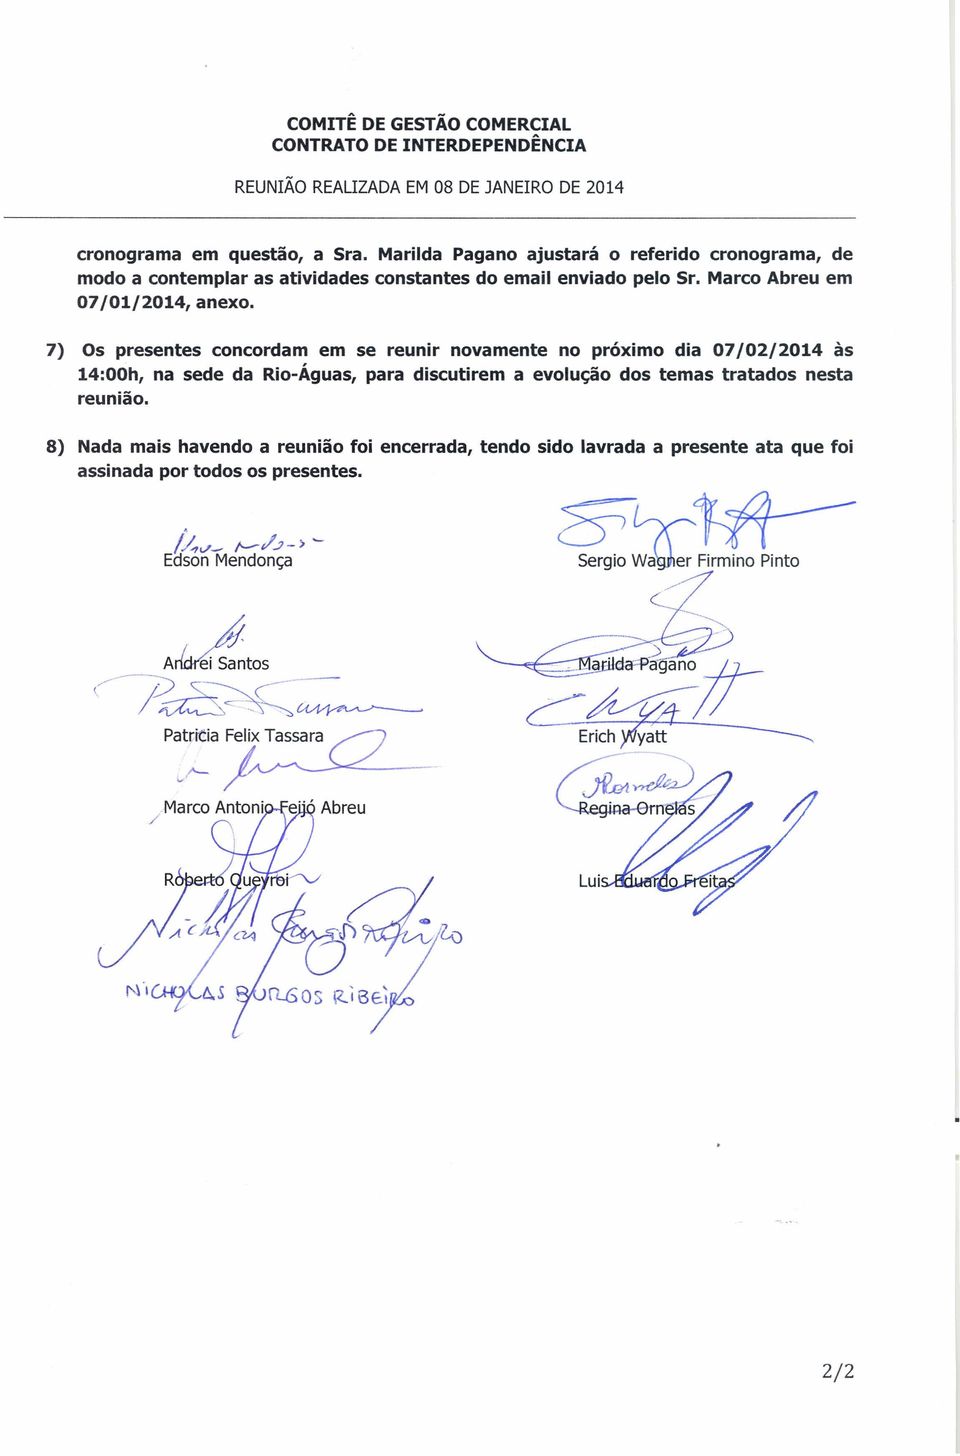 7) Os presentes concordam em se reunir novamente no proxrmo dia 07/02/2014 às 14:00h, na sede da Rio-Águas, para discutirem a evolução dos temas